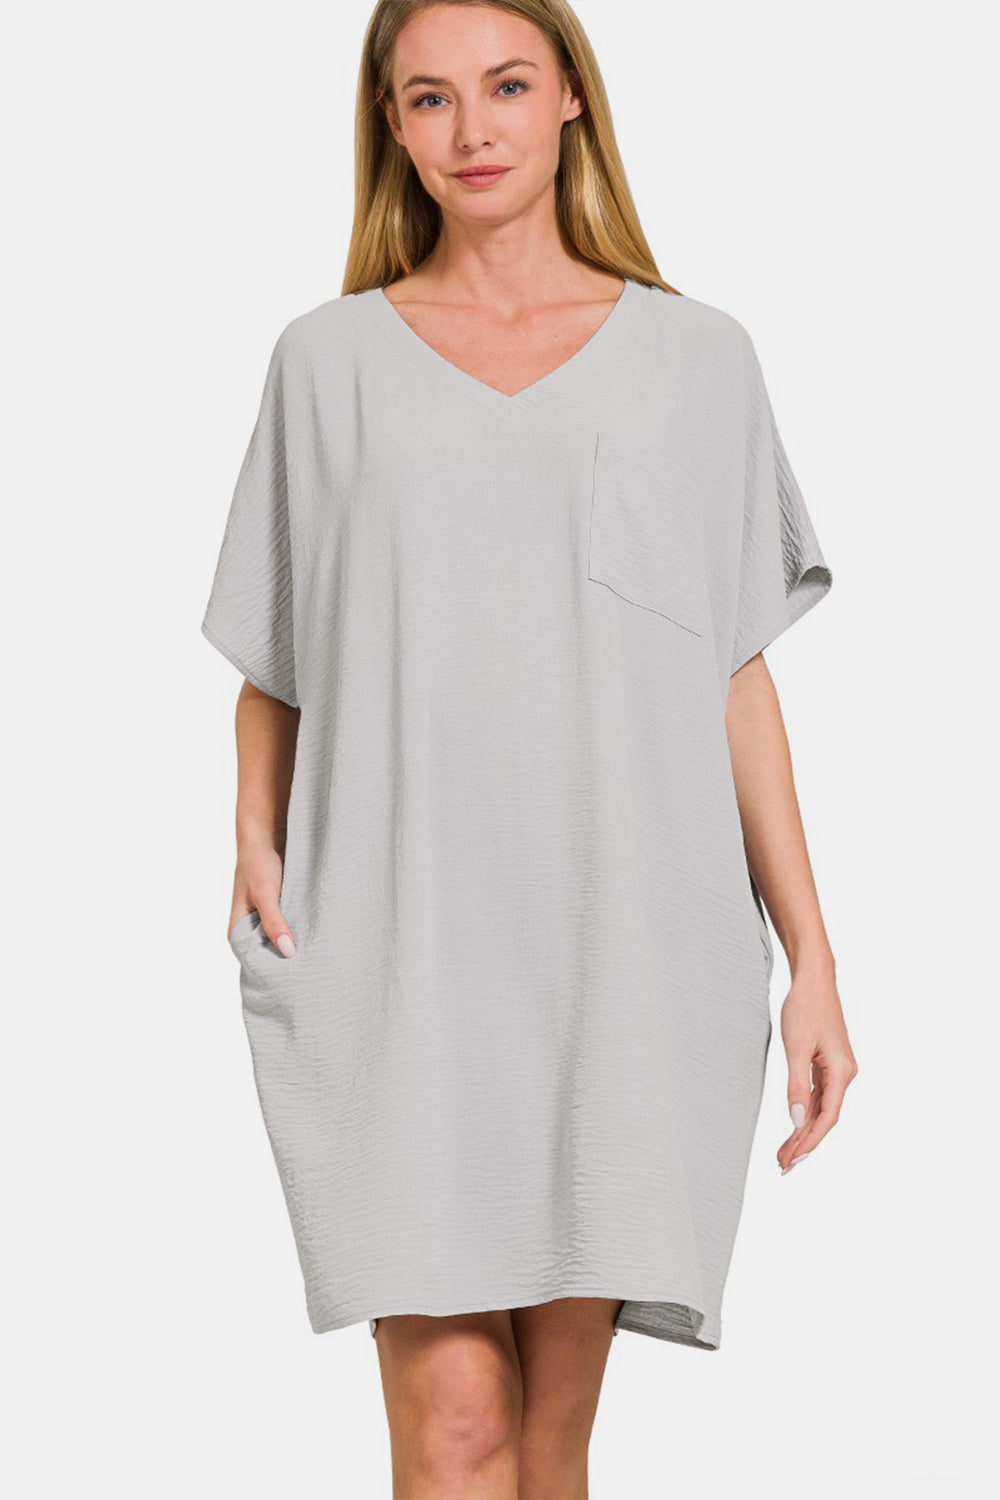 Zenana V-Neck Tee Dress with Pockets - DRESSES - Grey